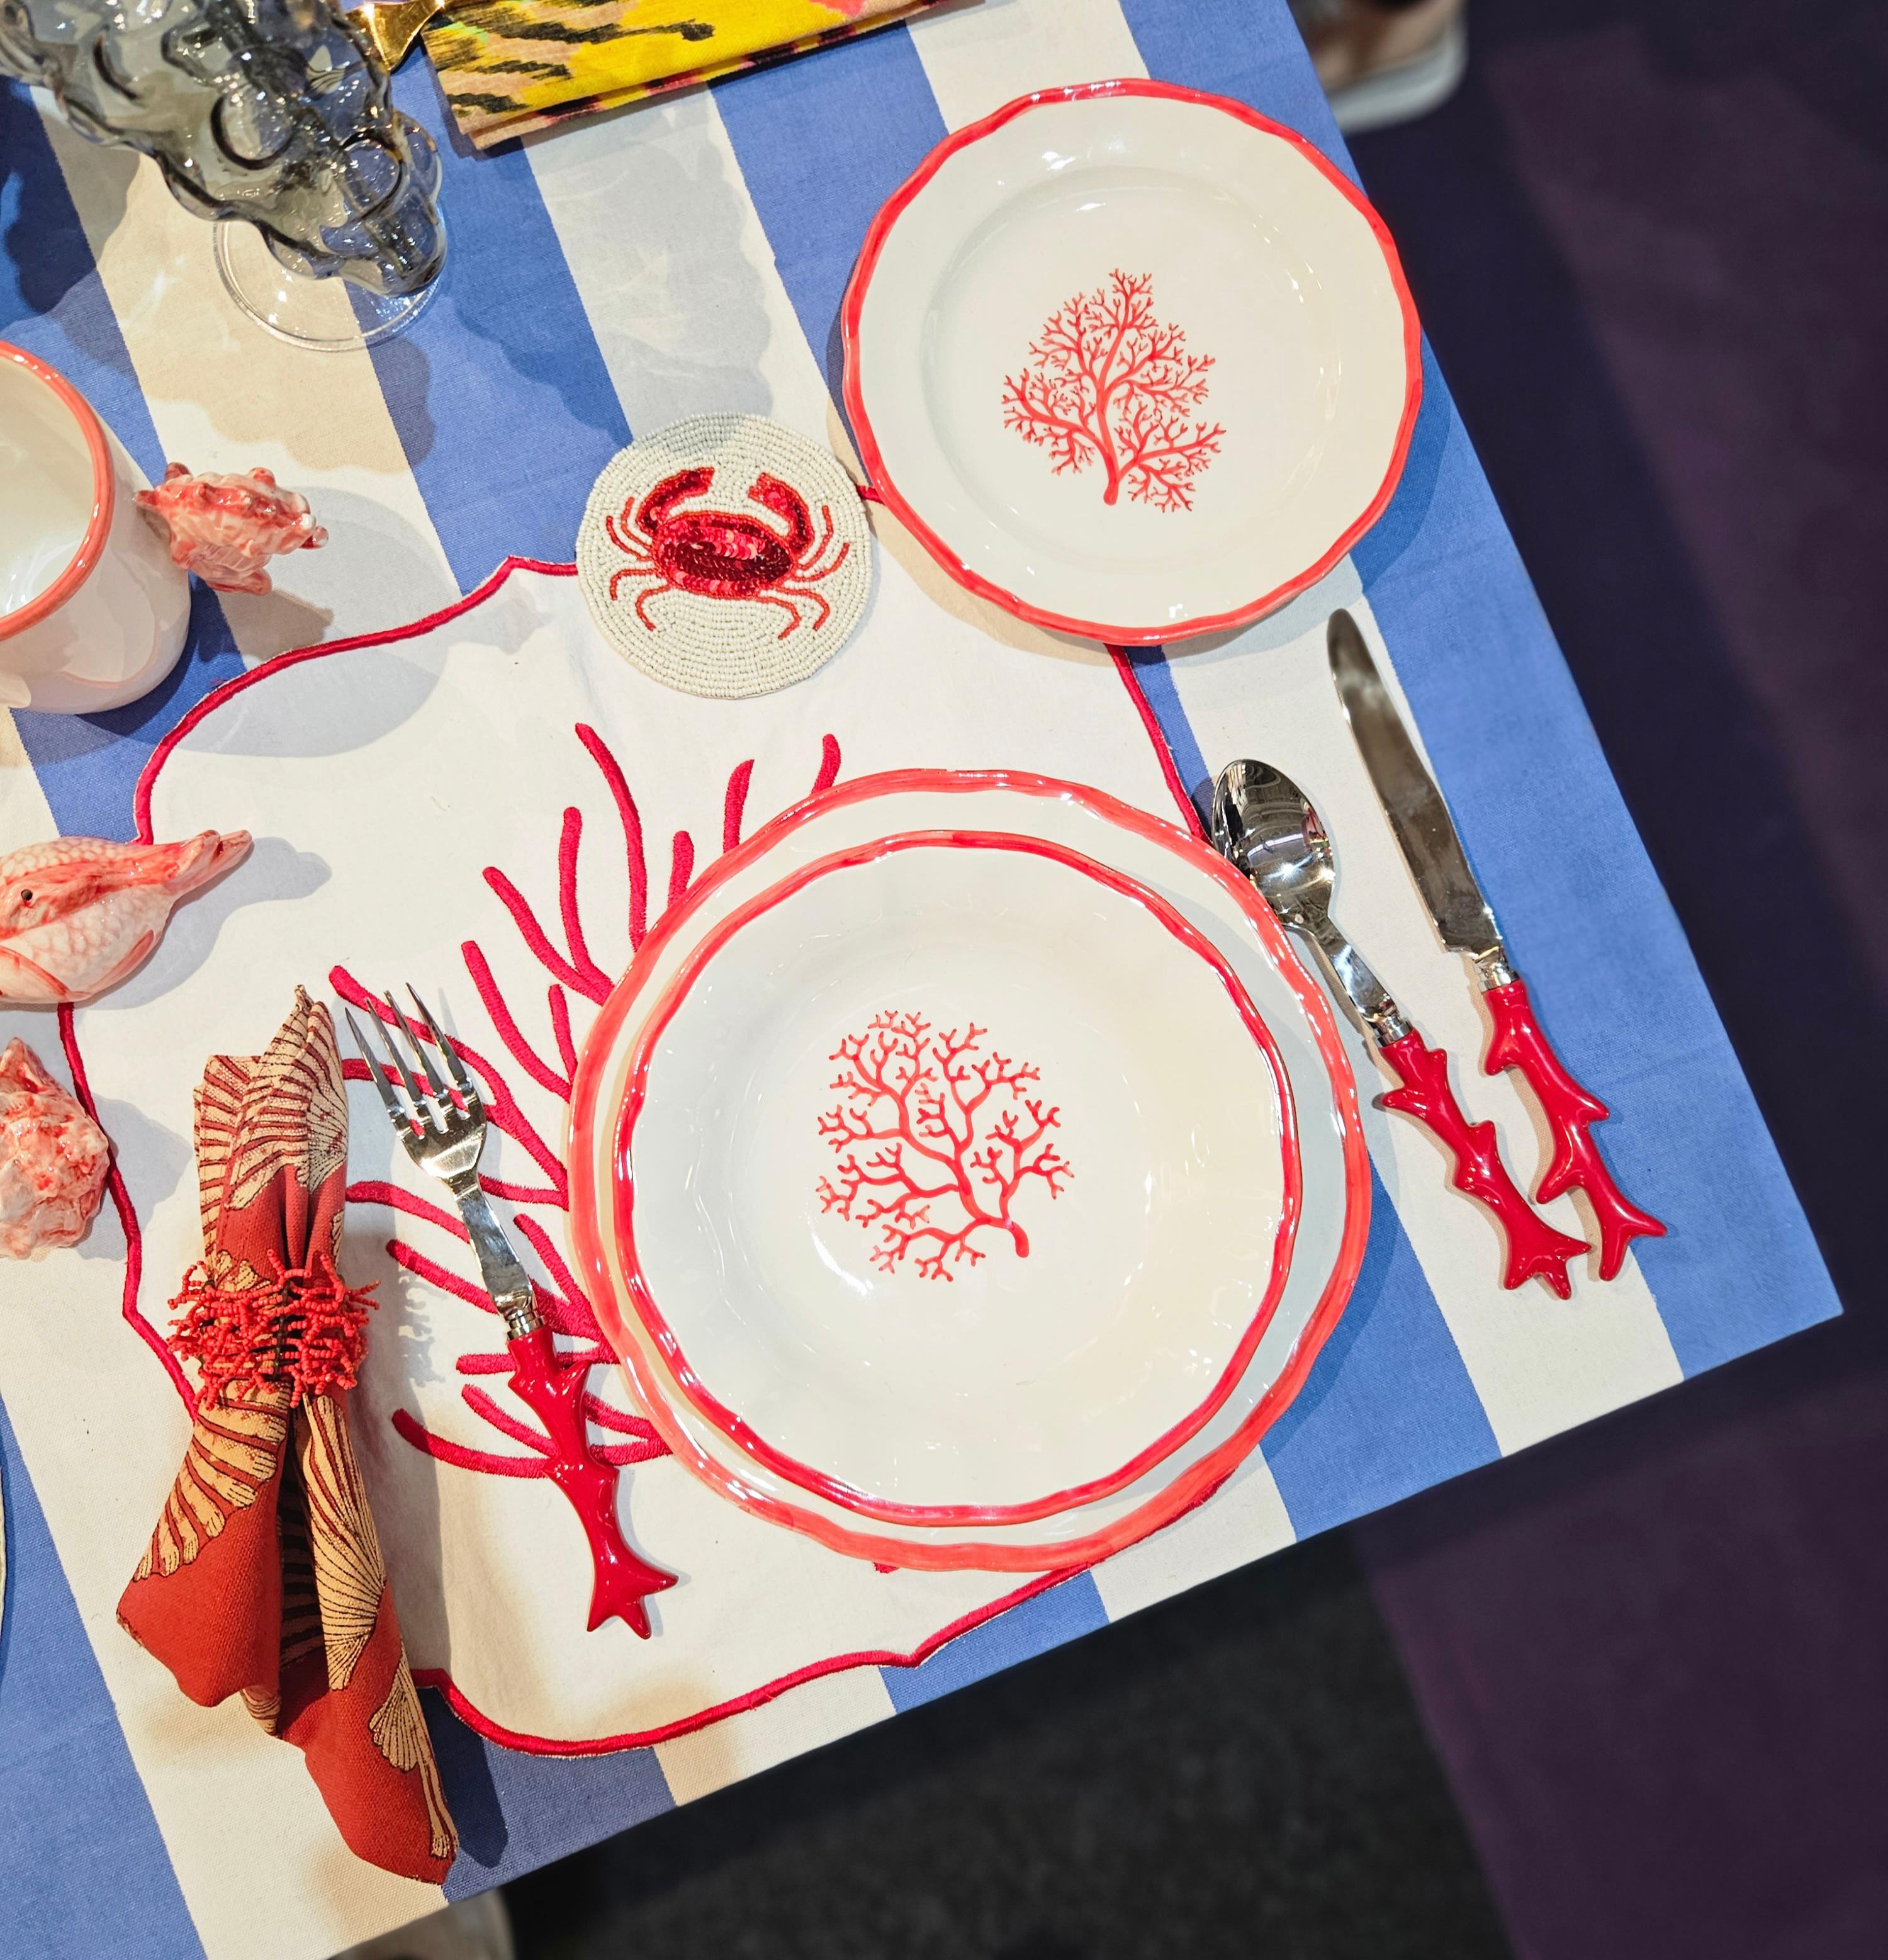 handbemalte korallenfarbene Keramikteller
Hergestellt in Italien, Keramik 
Ein Stück italienische Handwerkskunst auf Ihrem Tisch